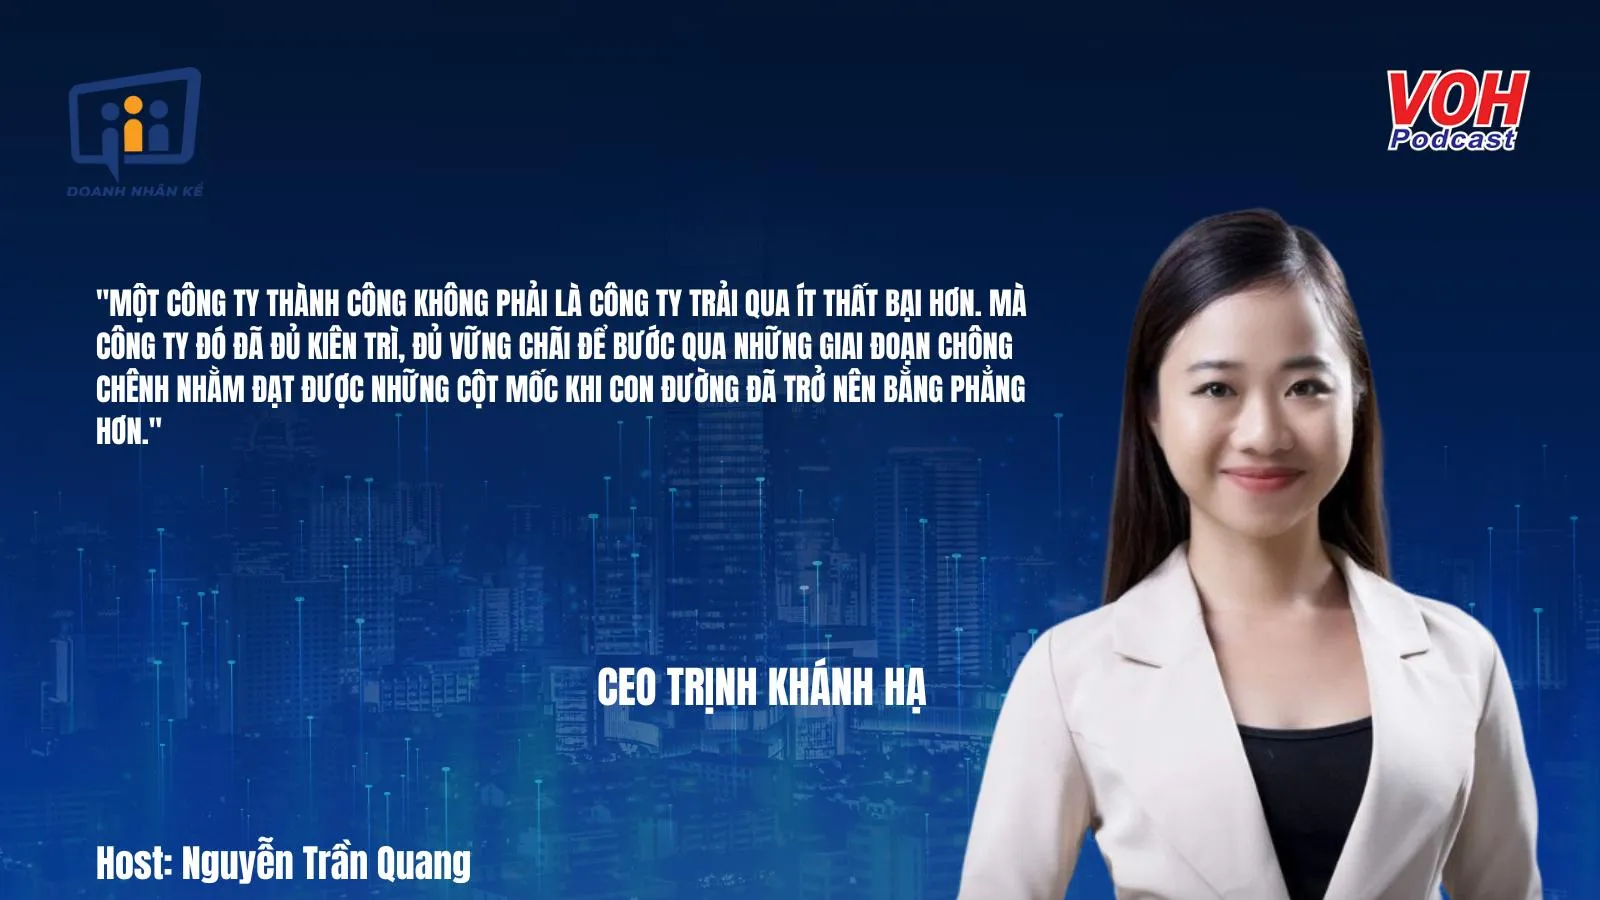 CEO Trịnh Khánh Hạ: Bí mật của công ty thành công và thất bại | DNK #84